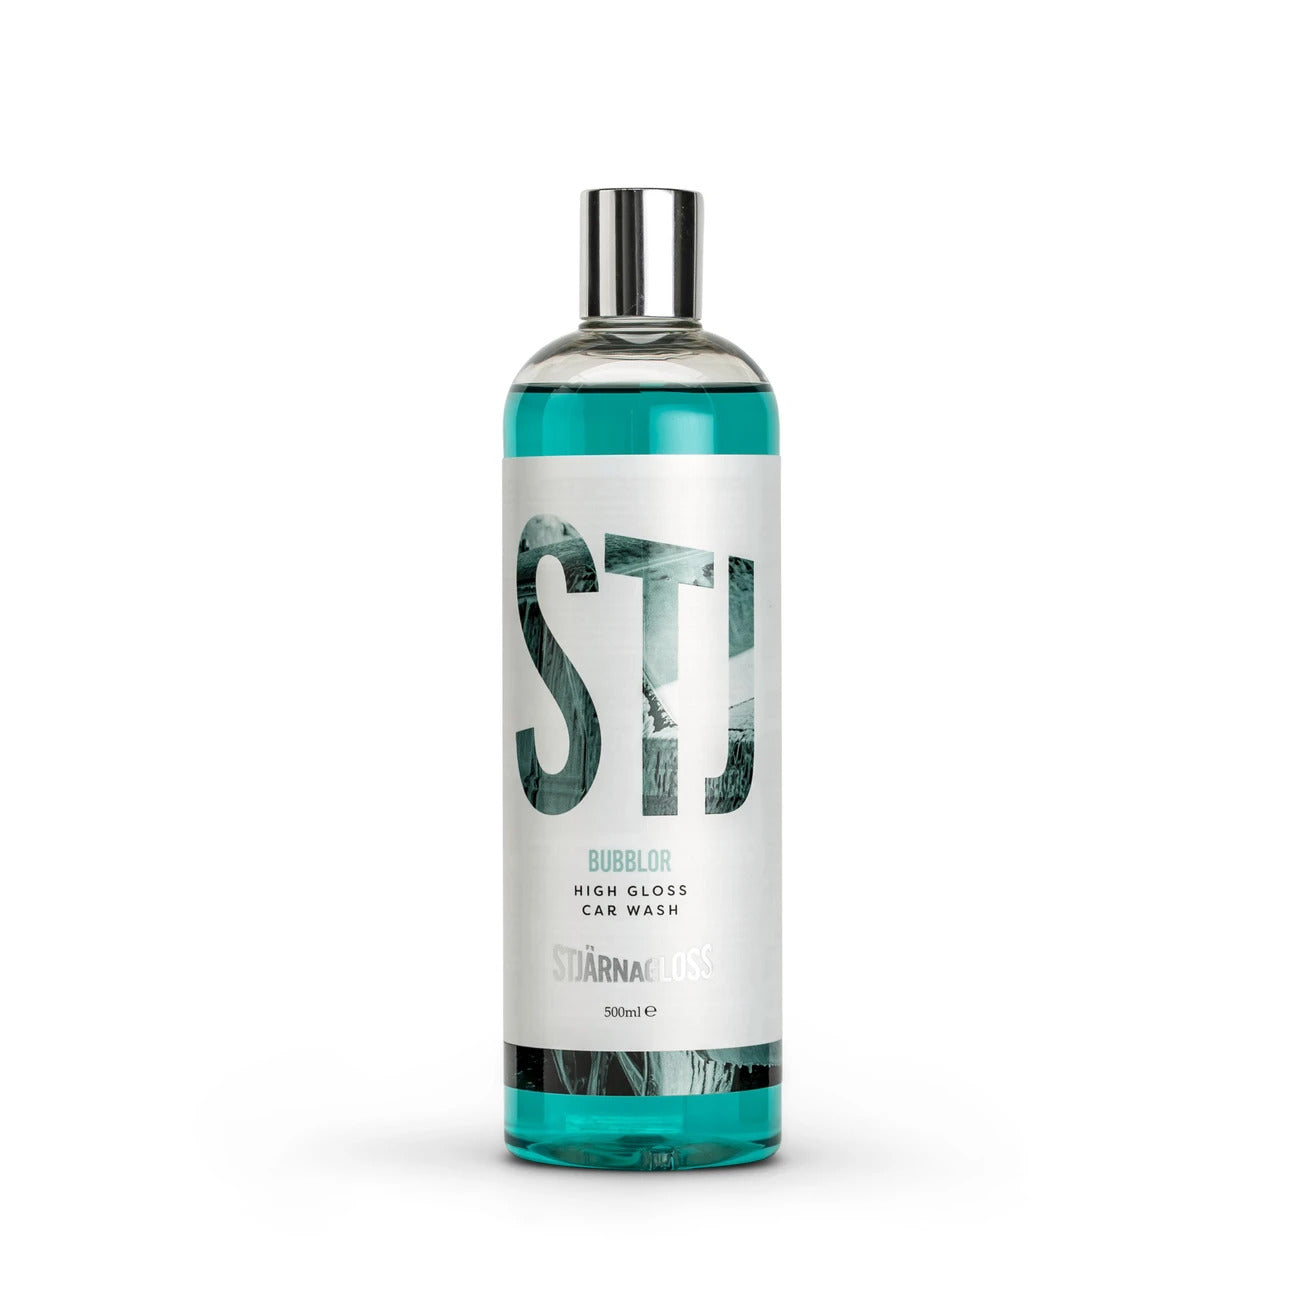 Stjarnagloss Bubblor - pH-Neutral High Gloss Car Wash 500ml